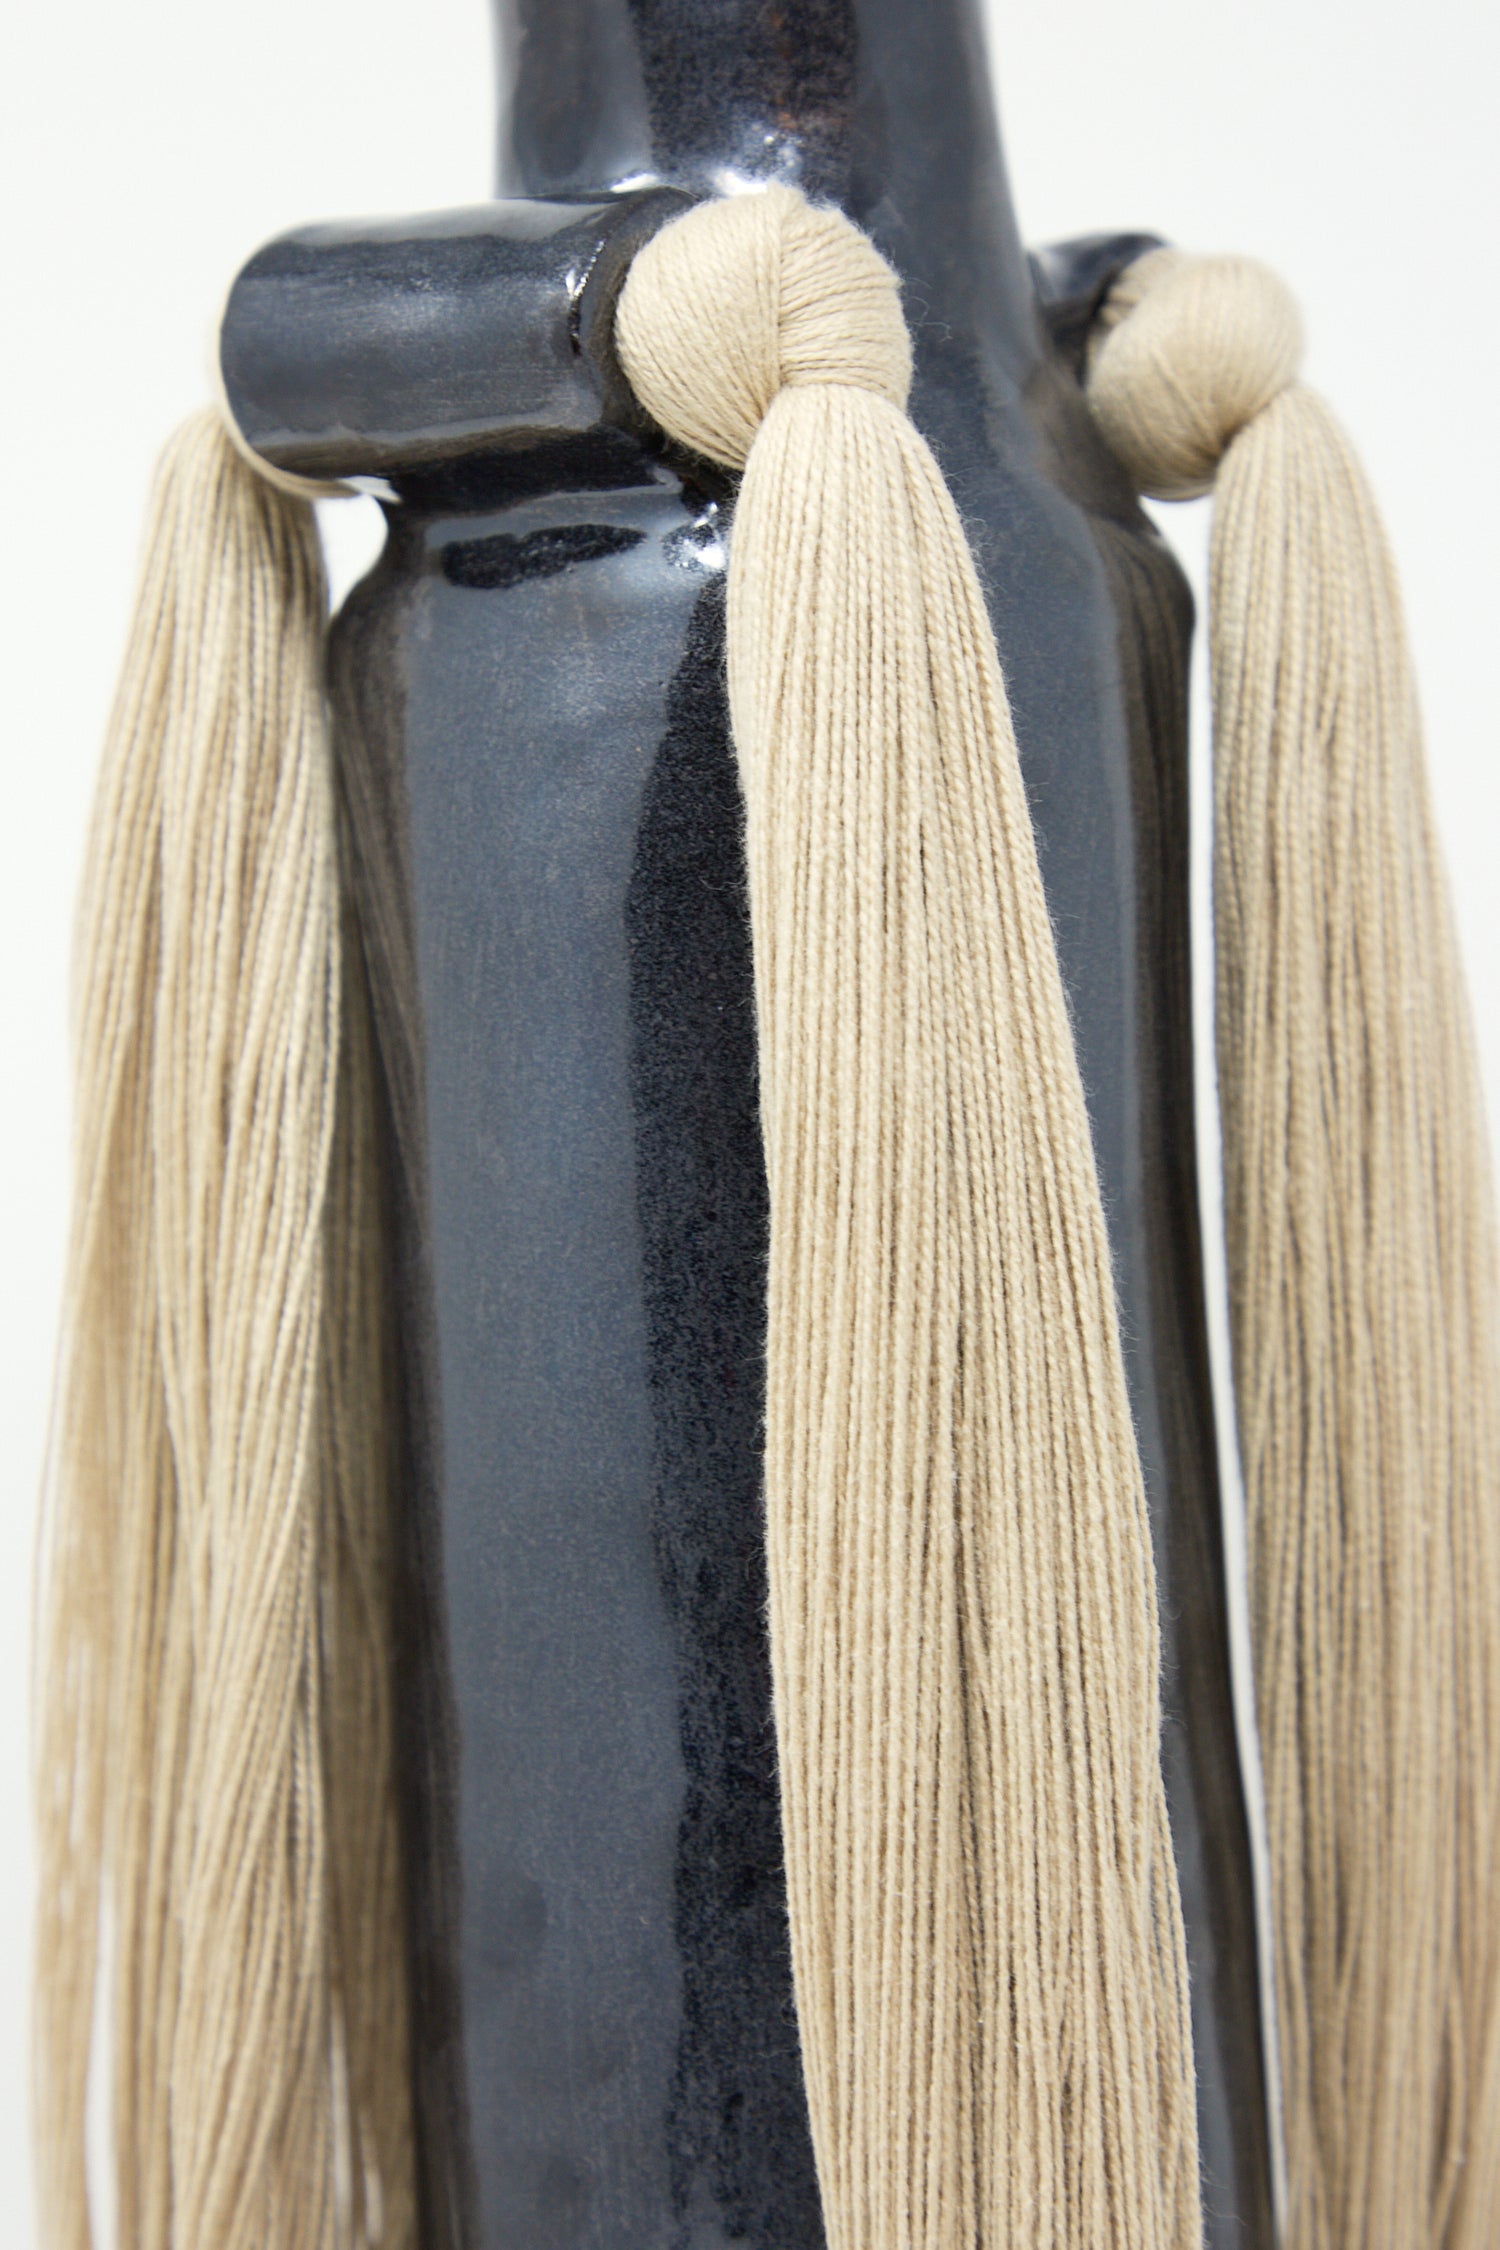 Beige tassels attached to a Karen Tinney Vase #703 in Black.